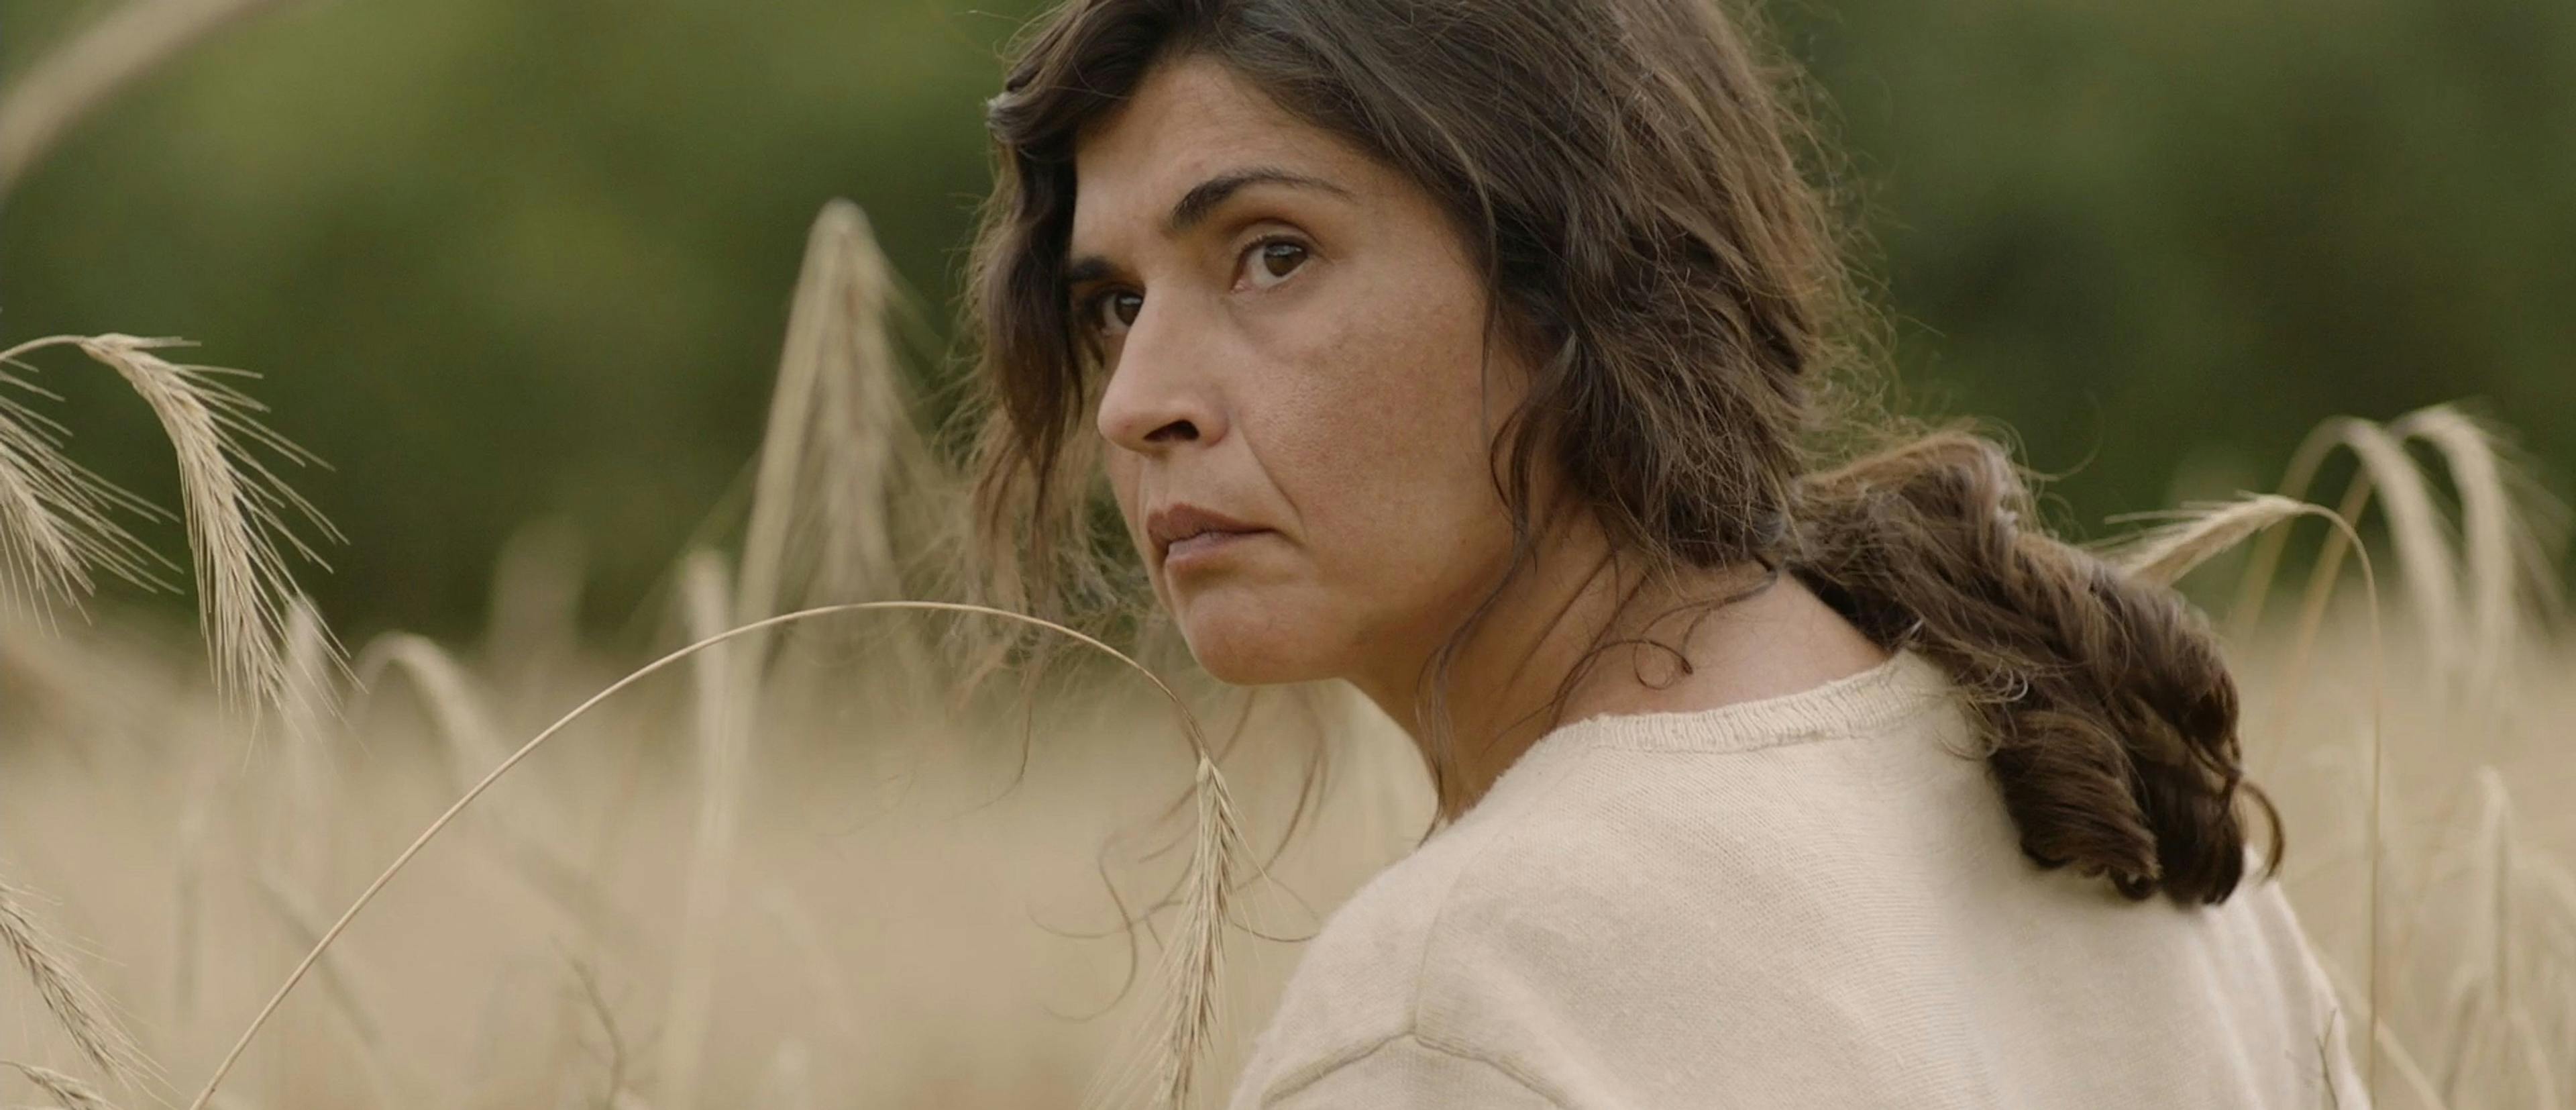 Janet Novas es la protagonista de 'O corno', que ha sido proyectada en el Festival de San Sebastián